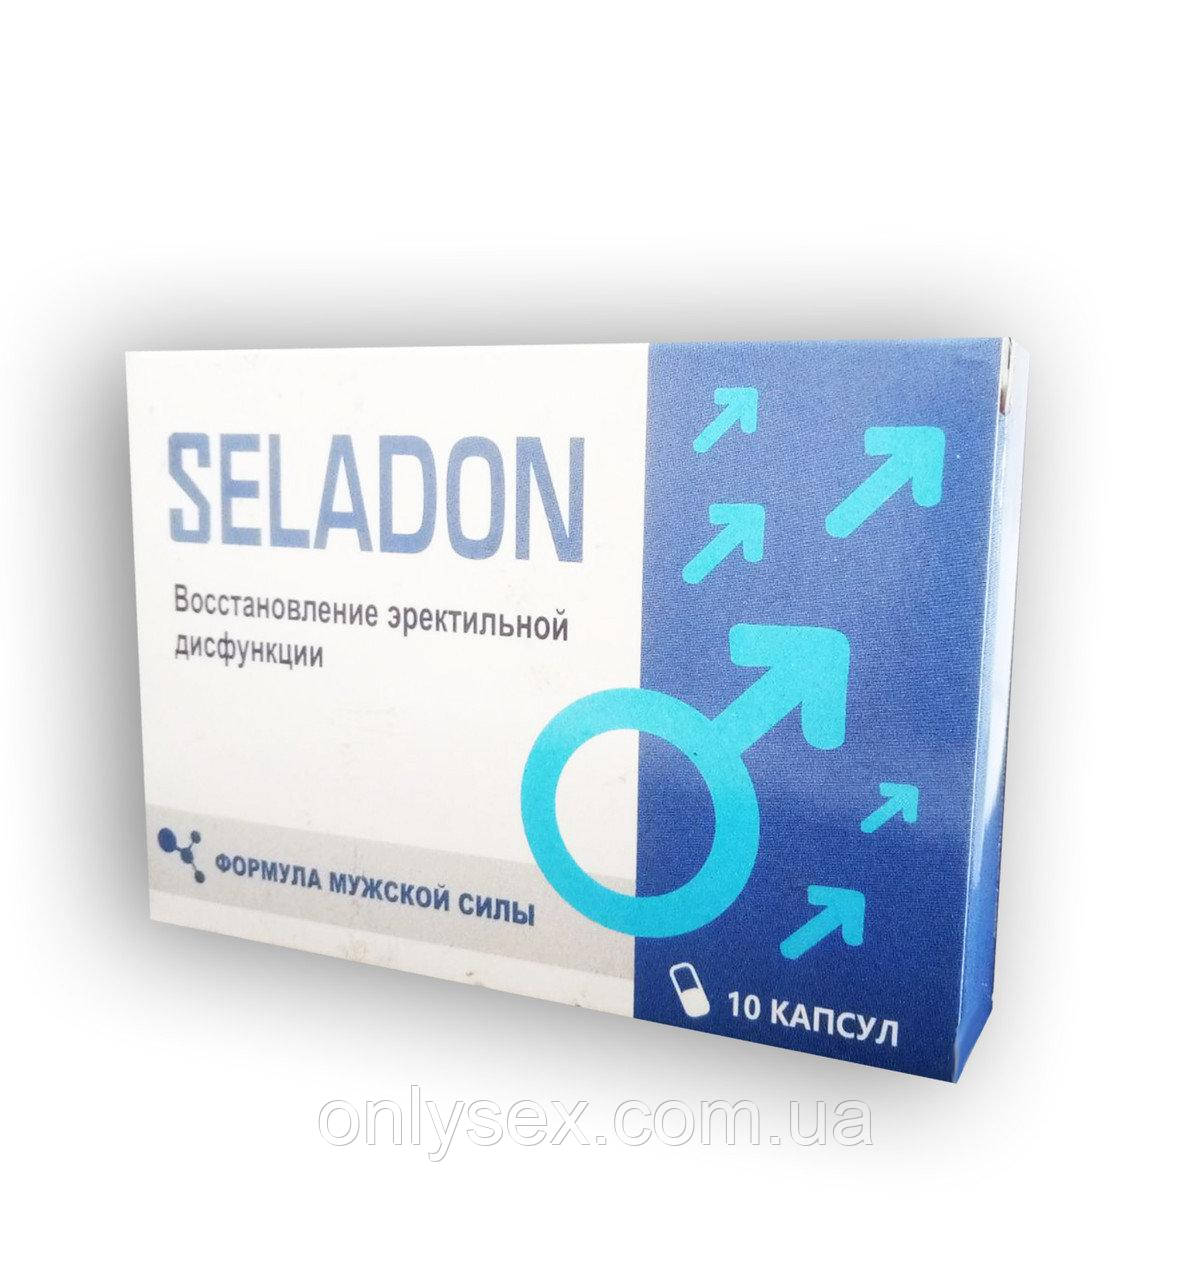 Seladon — Капсули для зміцнення еректильної функції (Селадон)